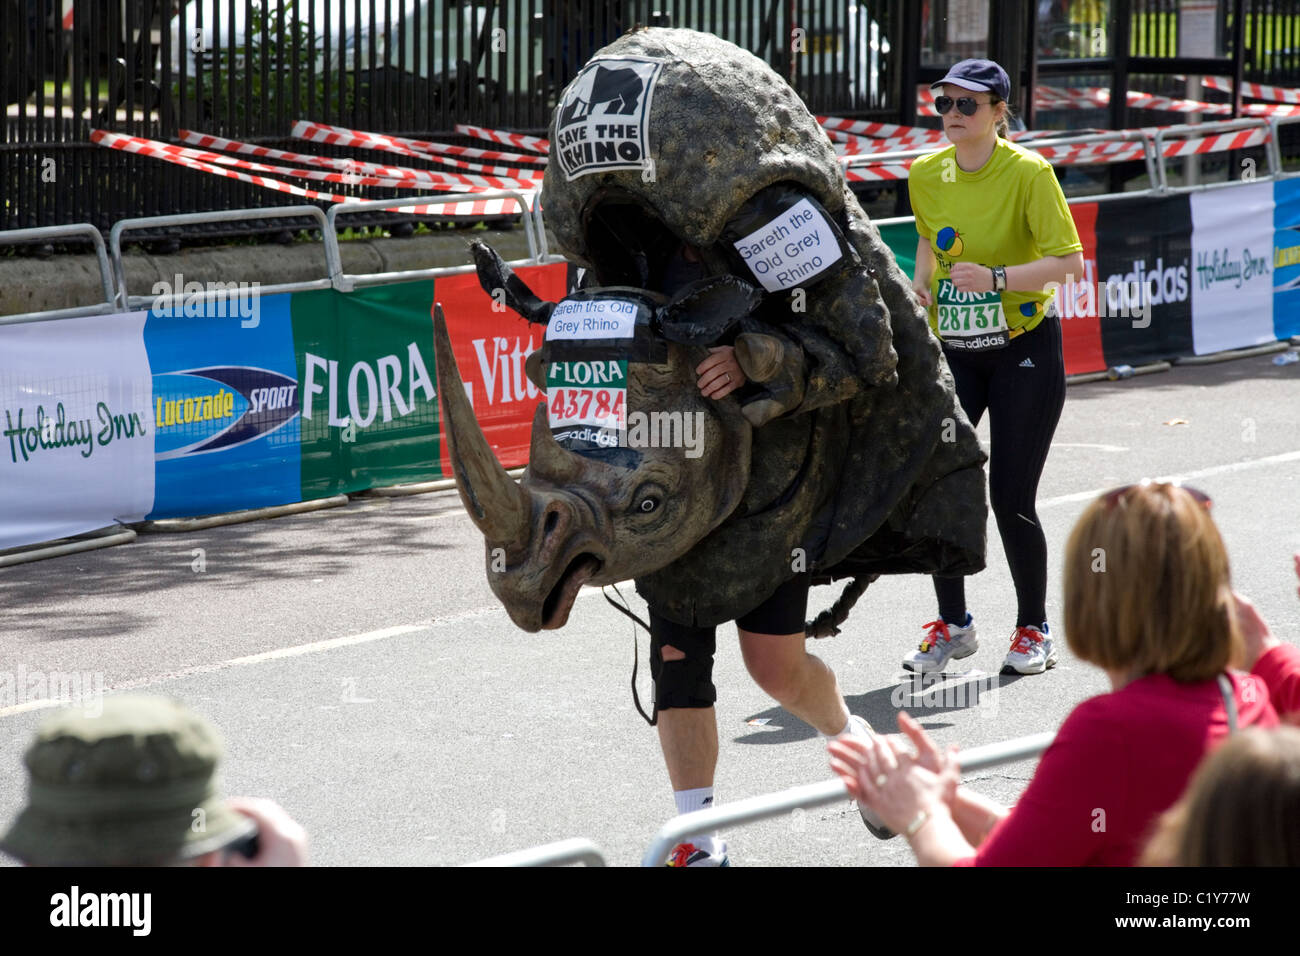 man in rhino costume running in the London marathon Stock Photo